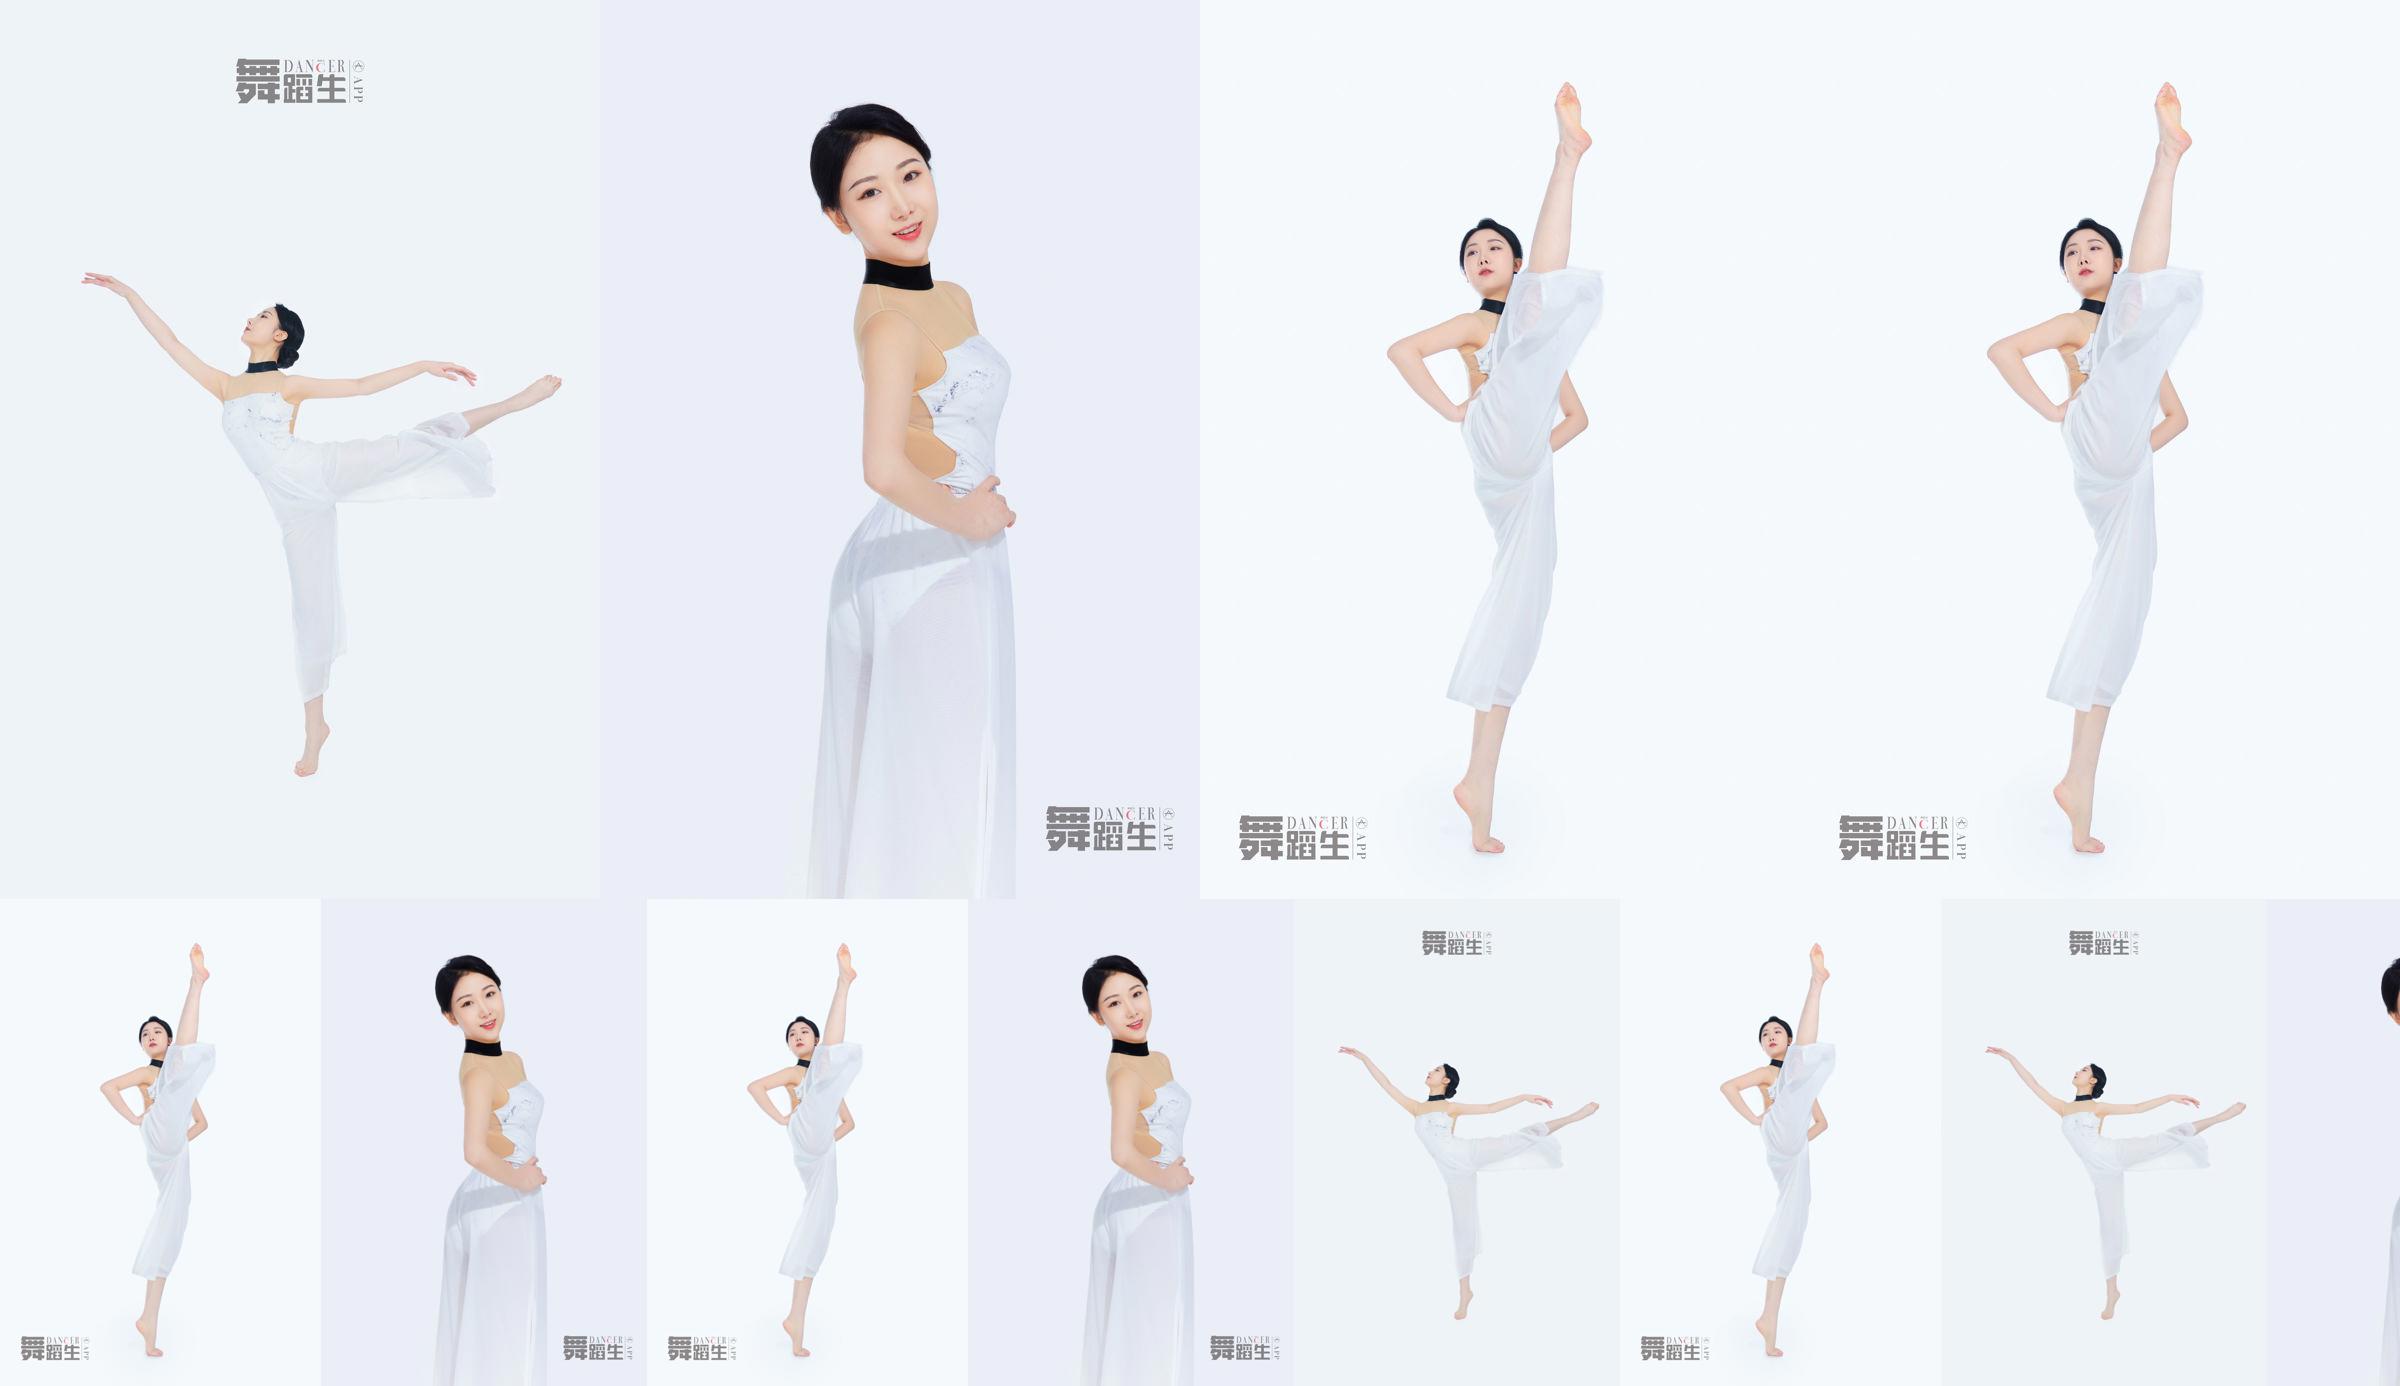 [Carrie Galli] Journal d'un étudiant en danse 081 Xue Hui No.0a0692 Page 6